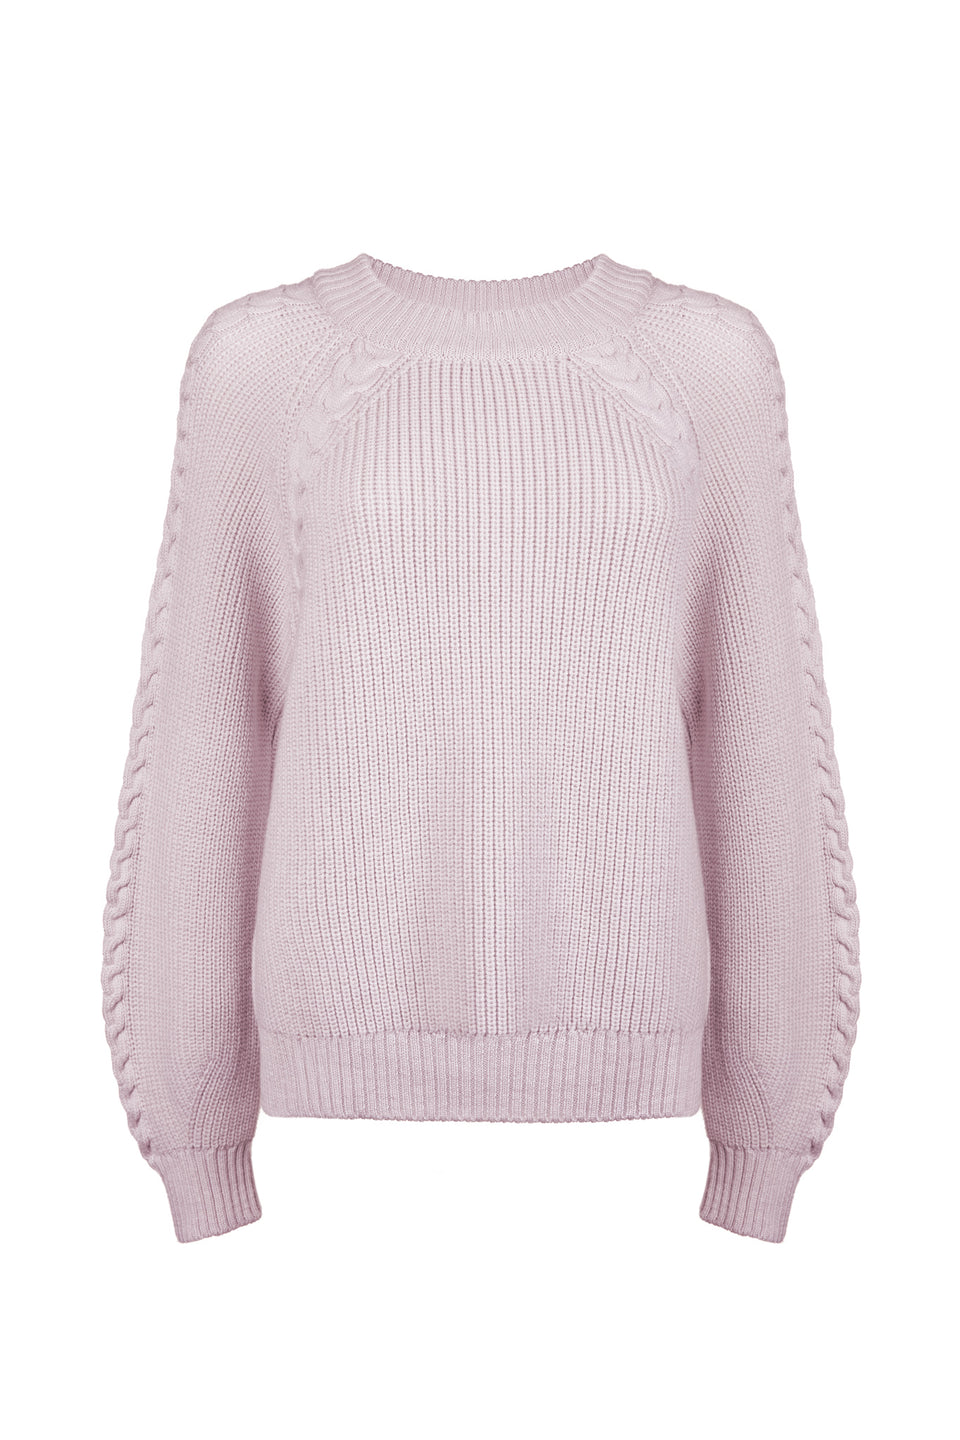 Dawn Italian Merino Sweater